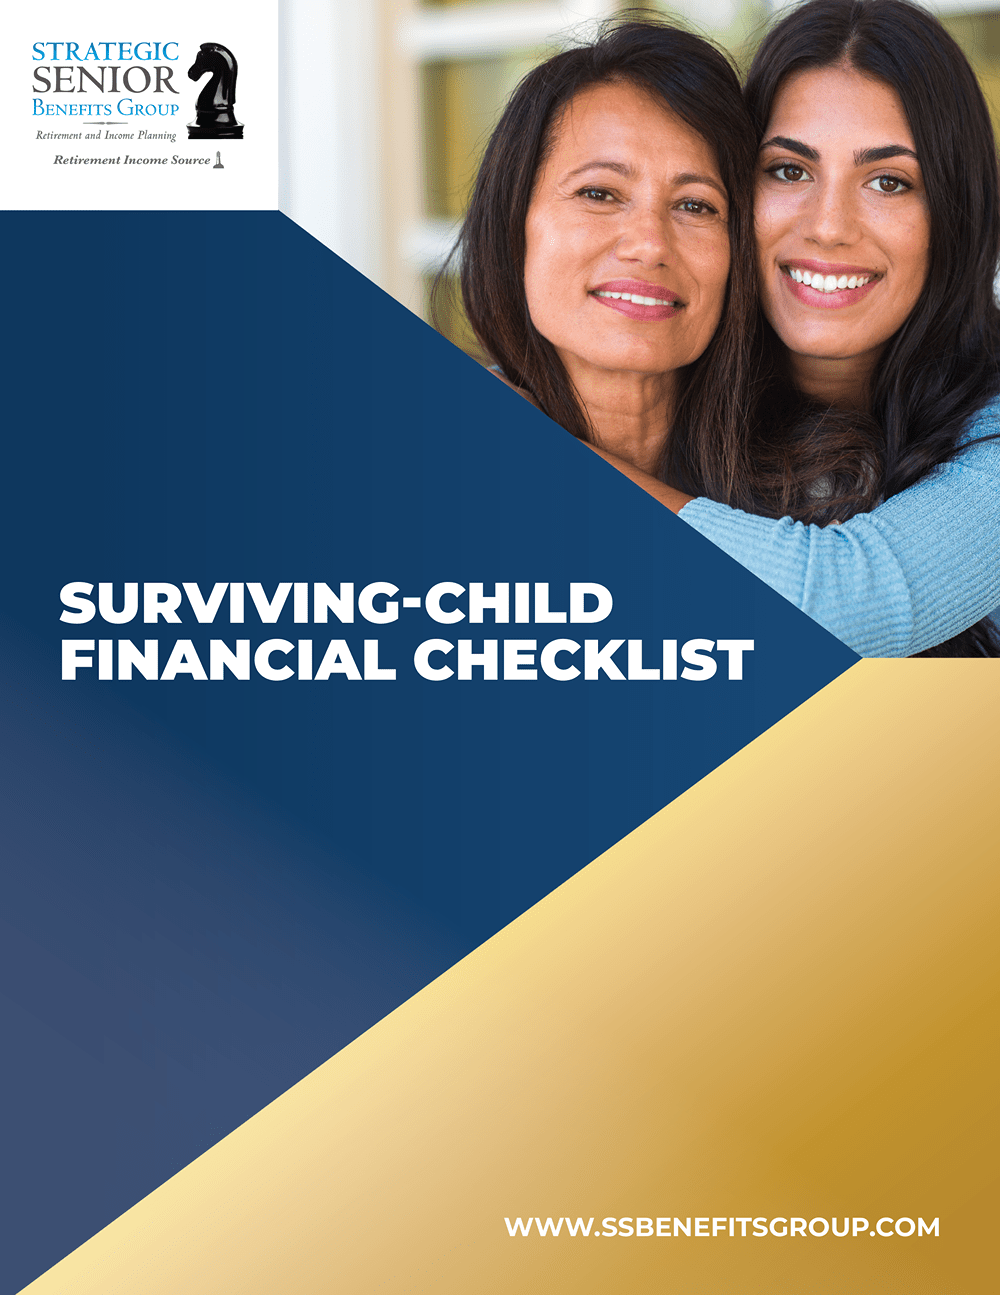 Strategic Senior Benefits Group - Surviving-Child Financial Checklist-1